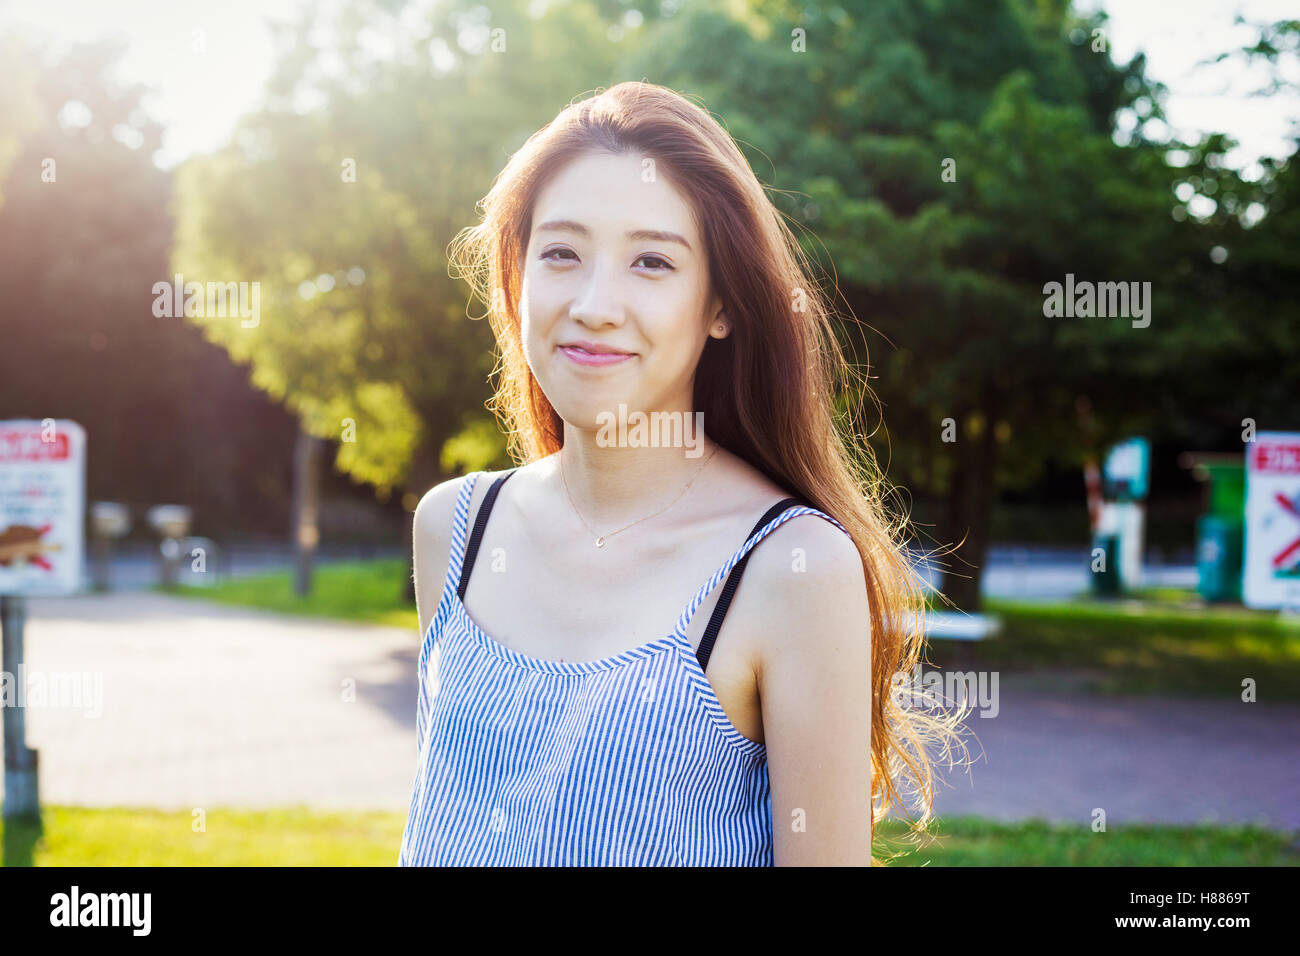 Una joven en ropa de verano con pelo largo Foto de stock